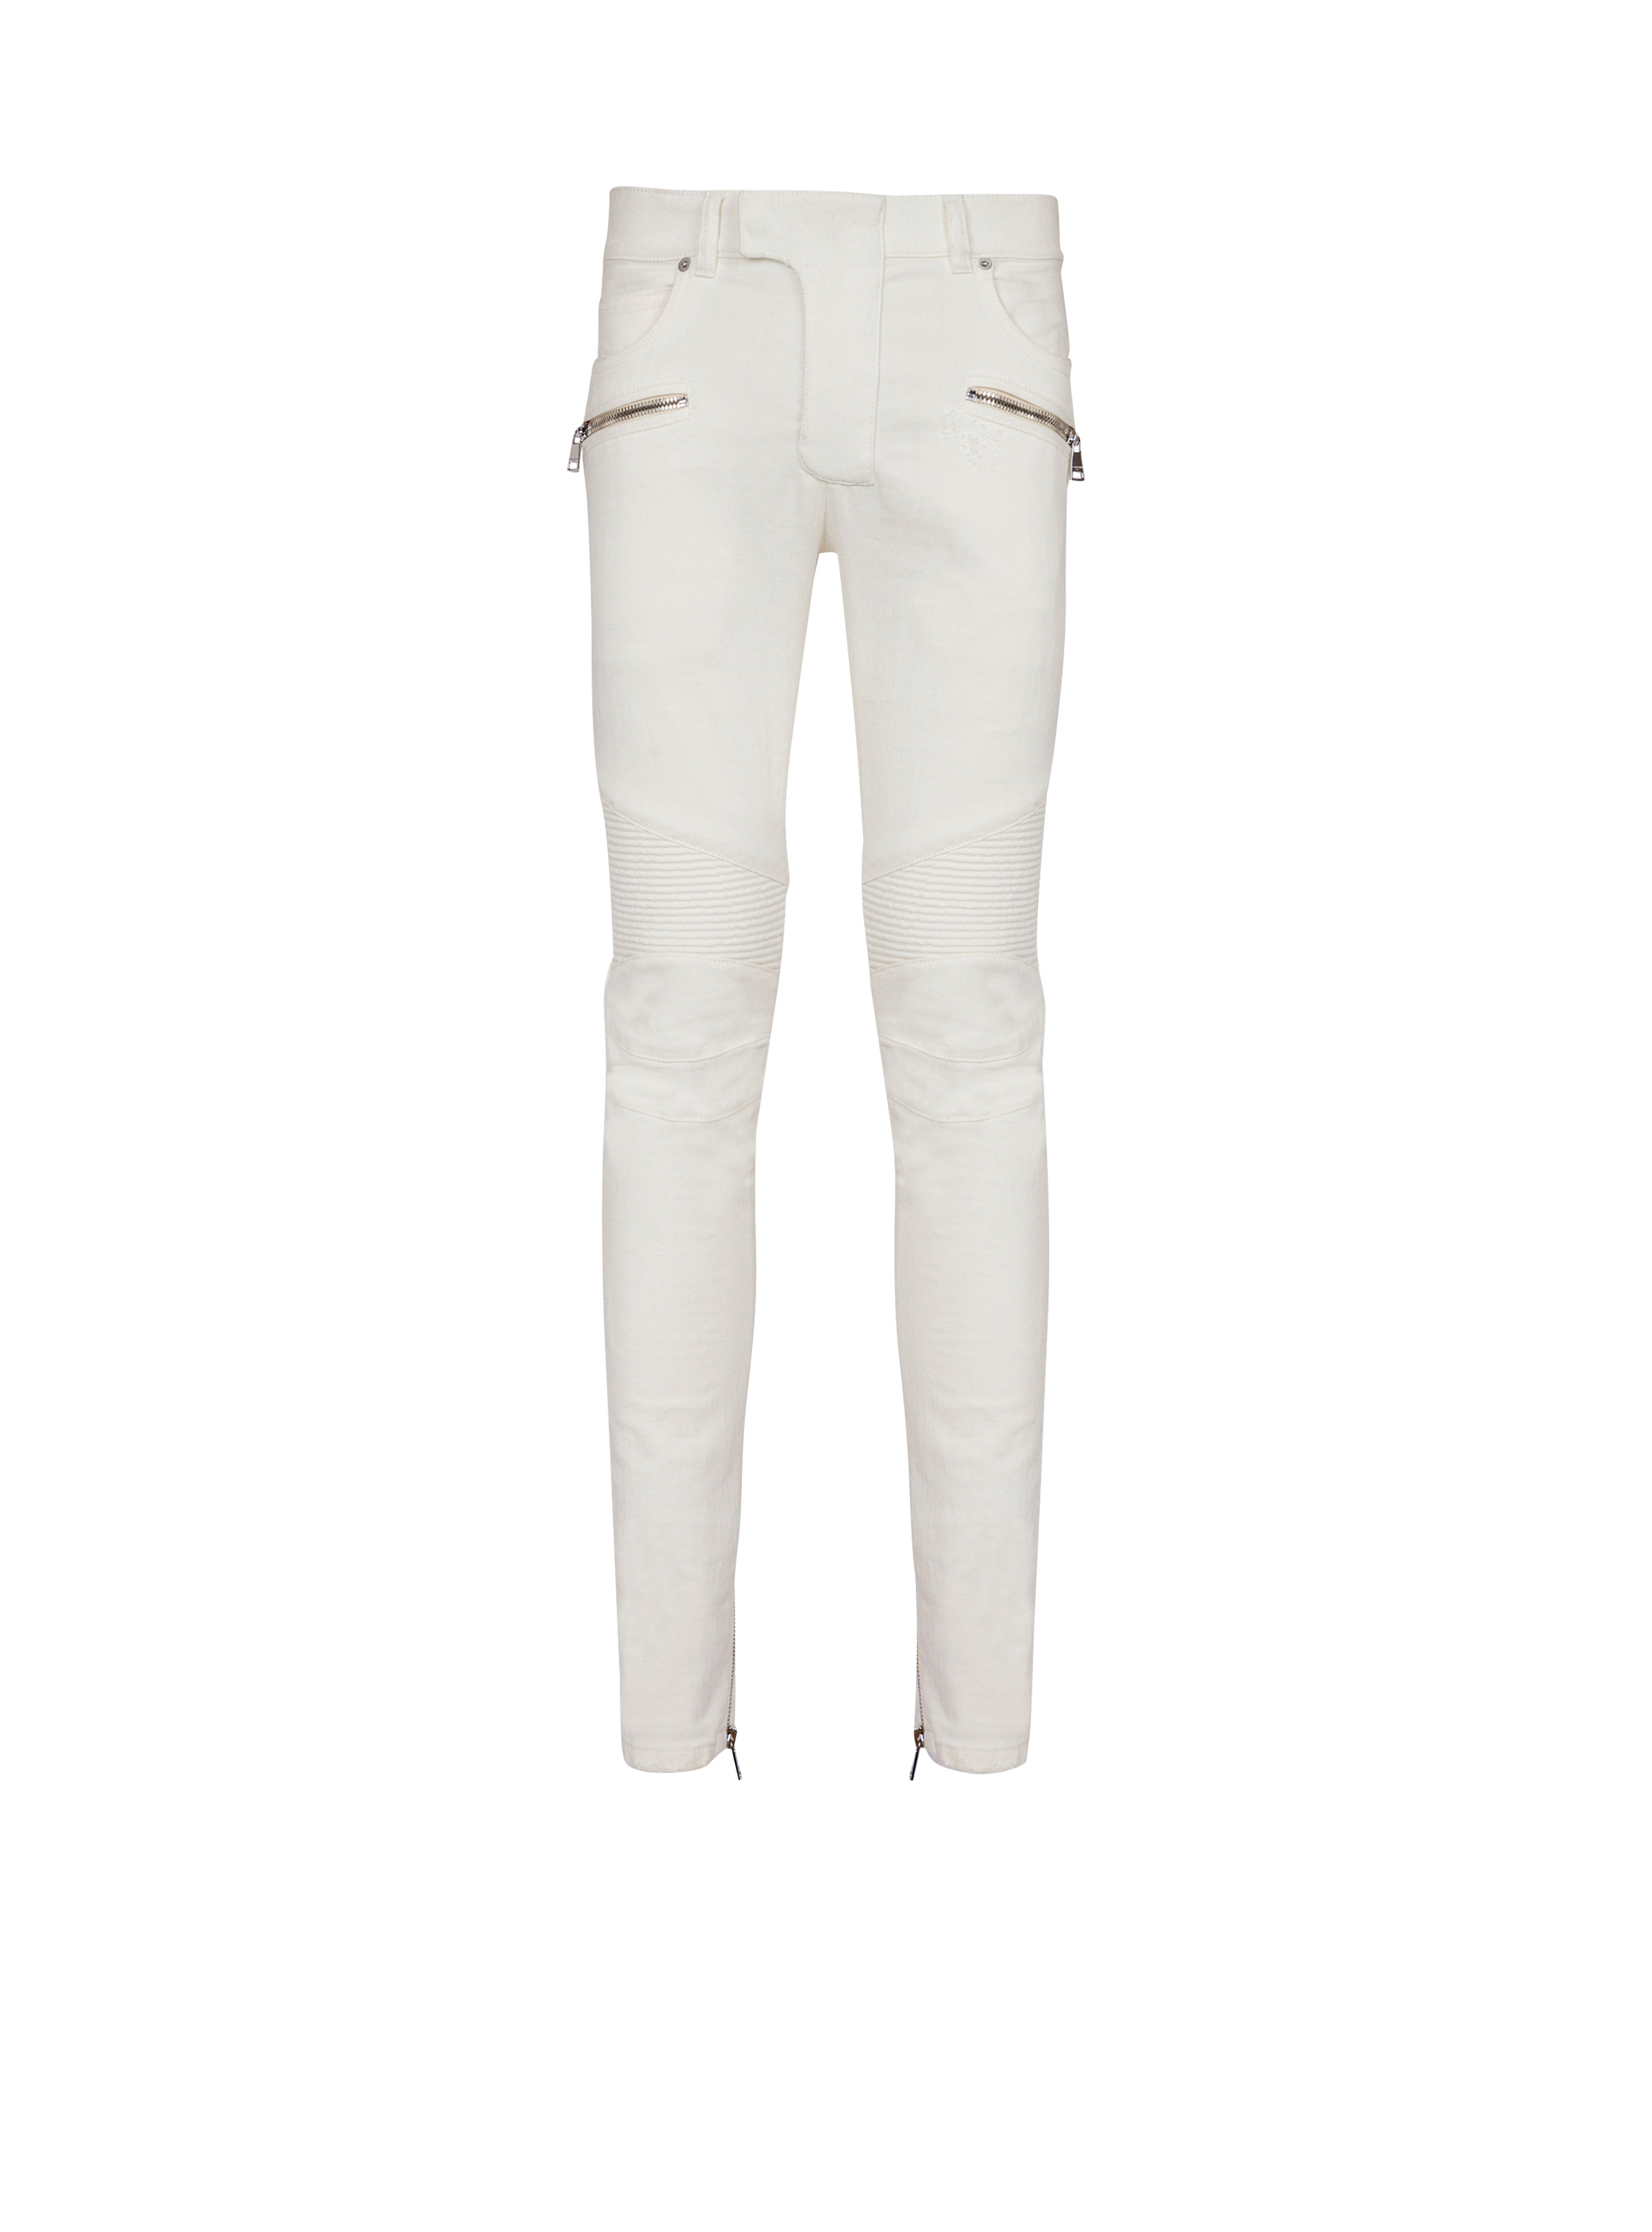 Biker jeans in white denim - 1